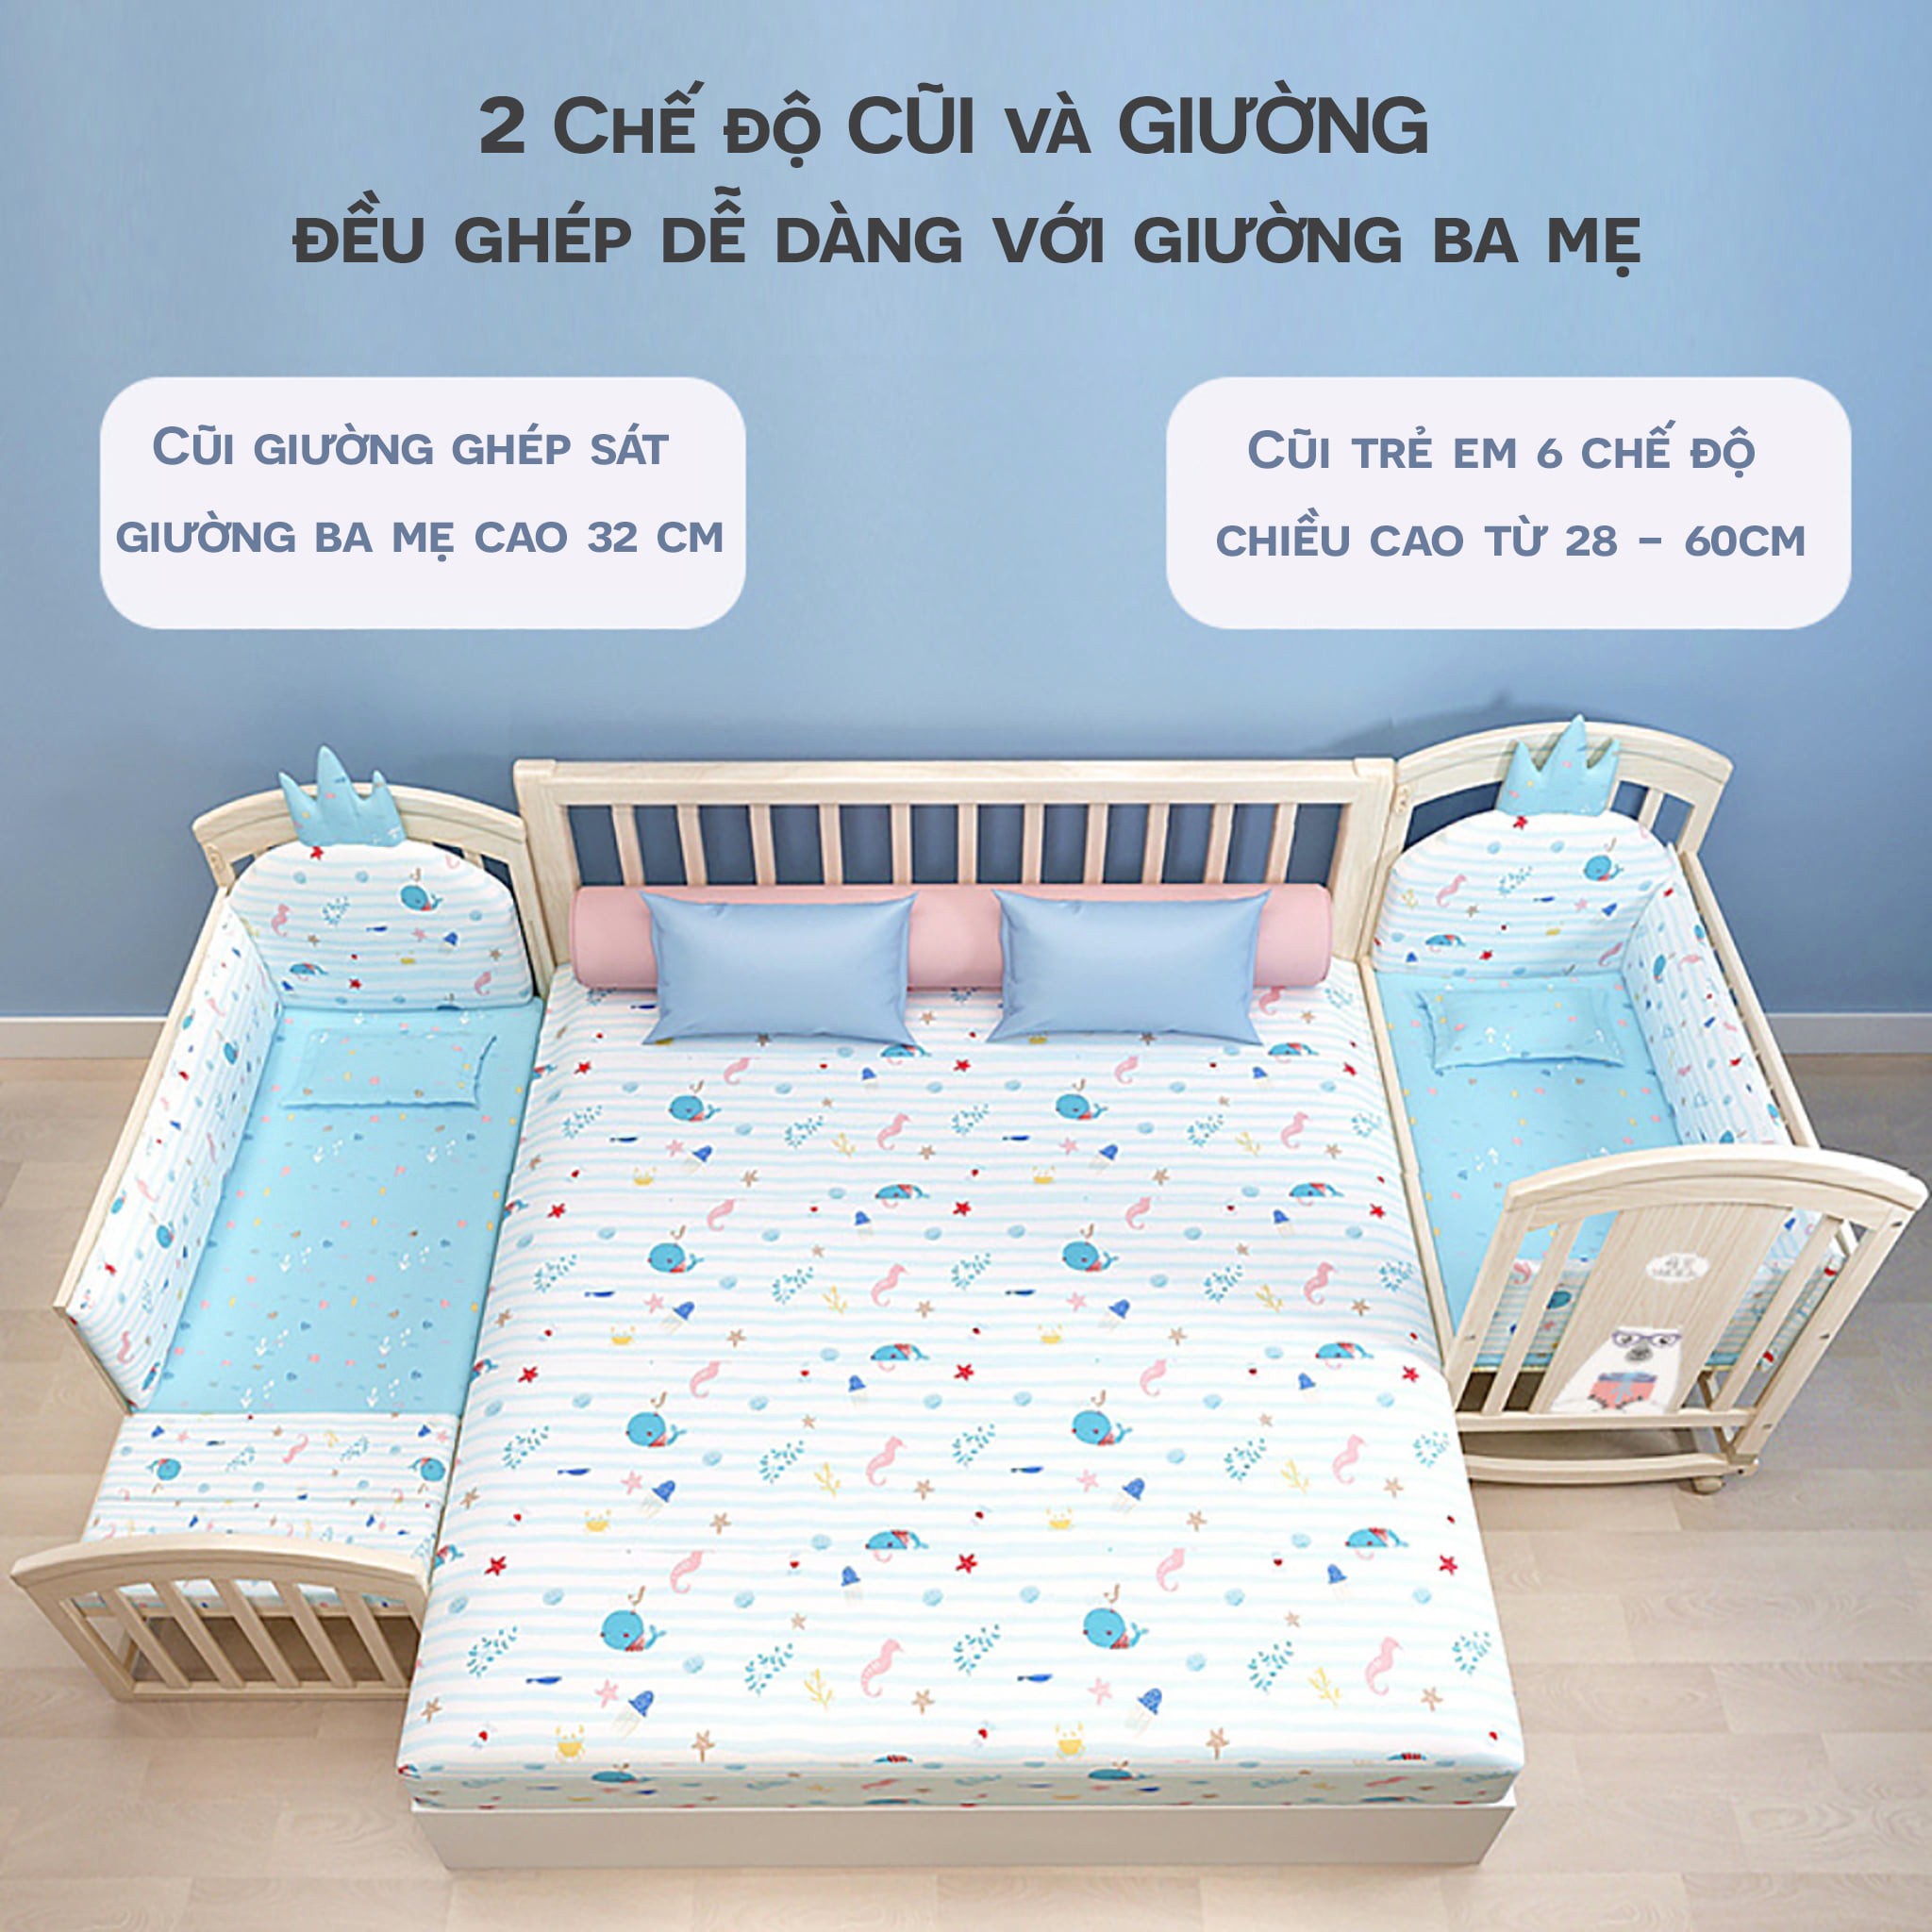 Giường ghép cho bé tạo thành được nhiều kiểu giường khác nhau 